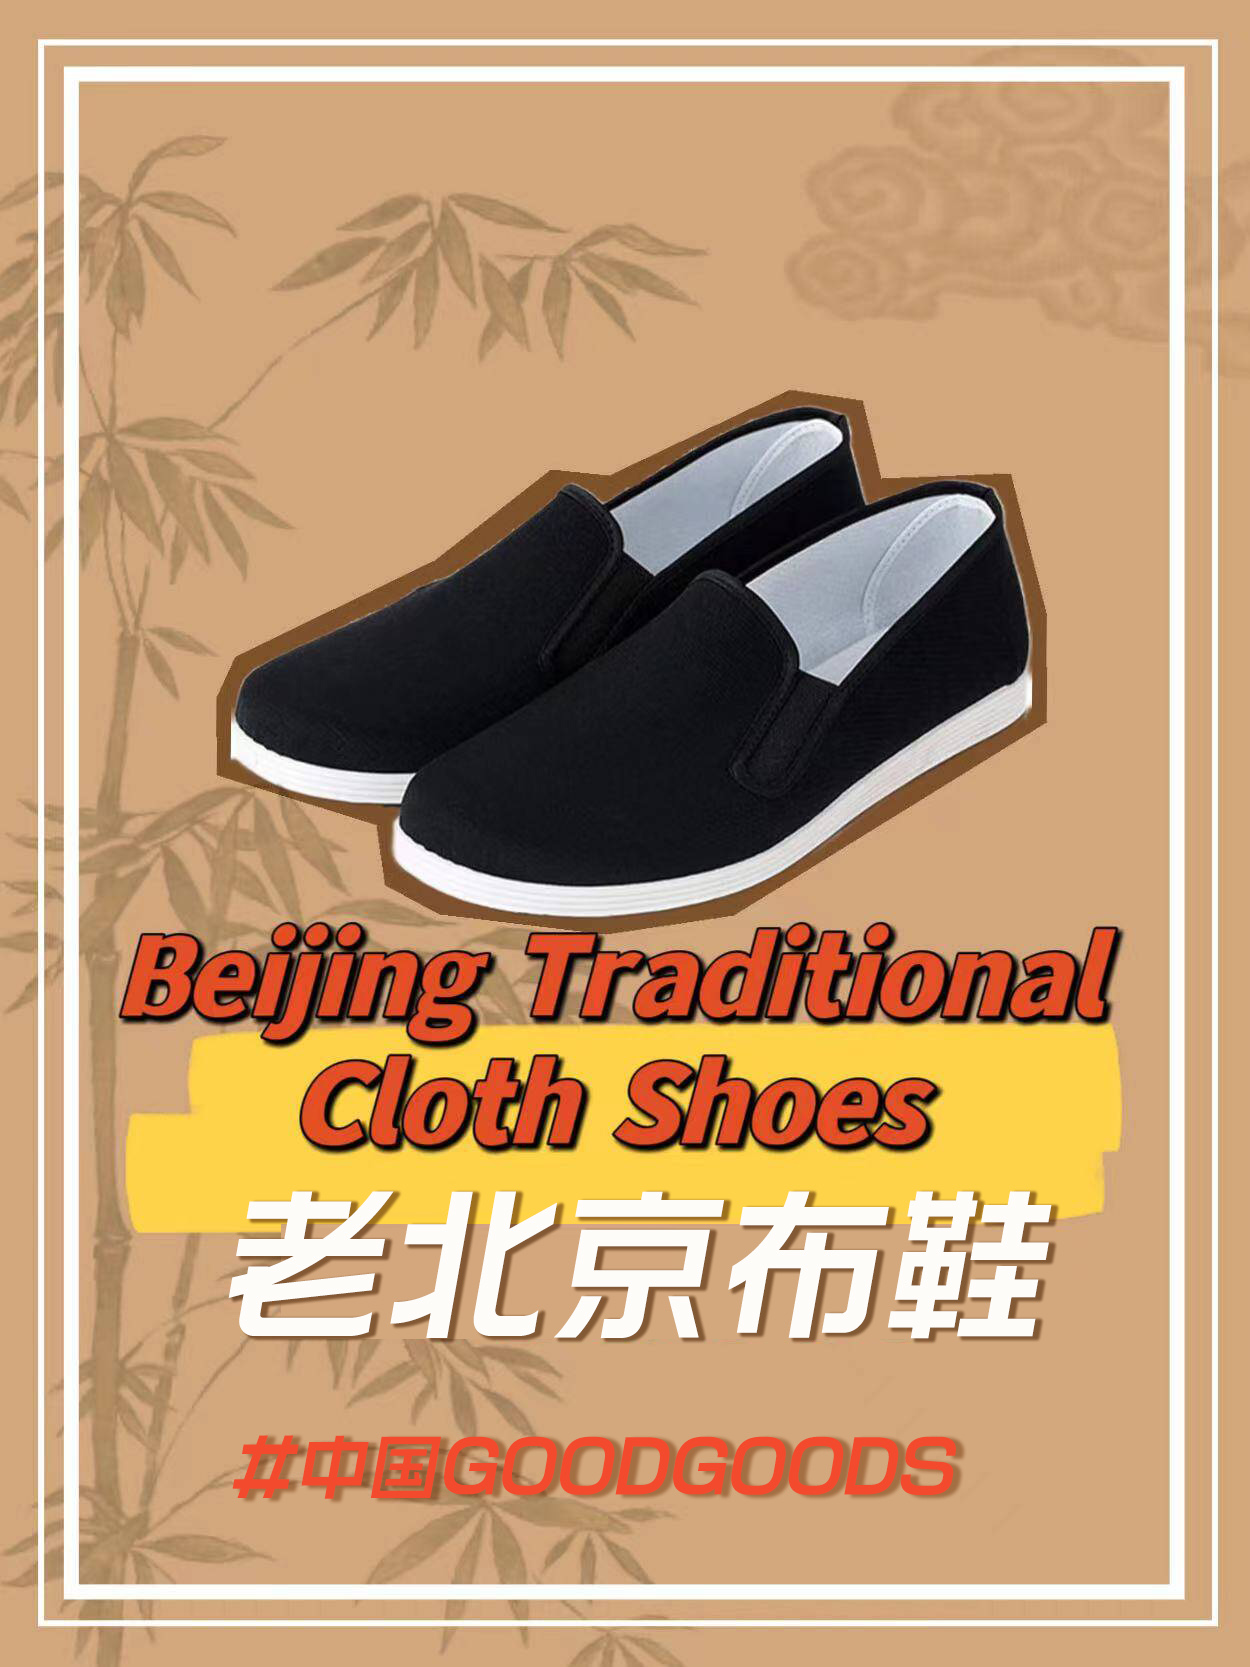 【音声ニュース】【中国GOODGOODS】3000年以上の歴史を持つ北京の靴